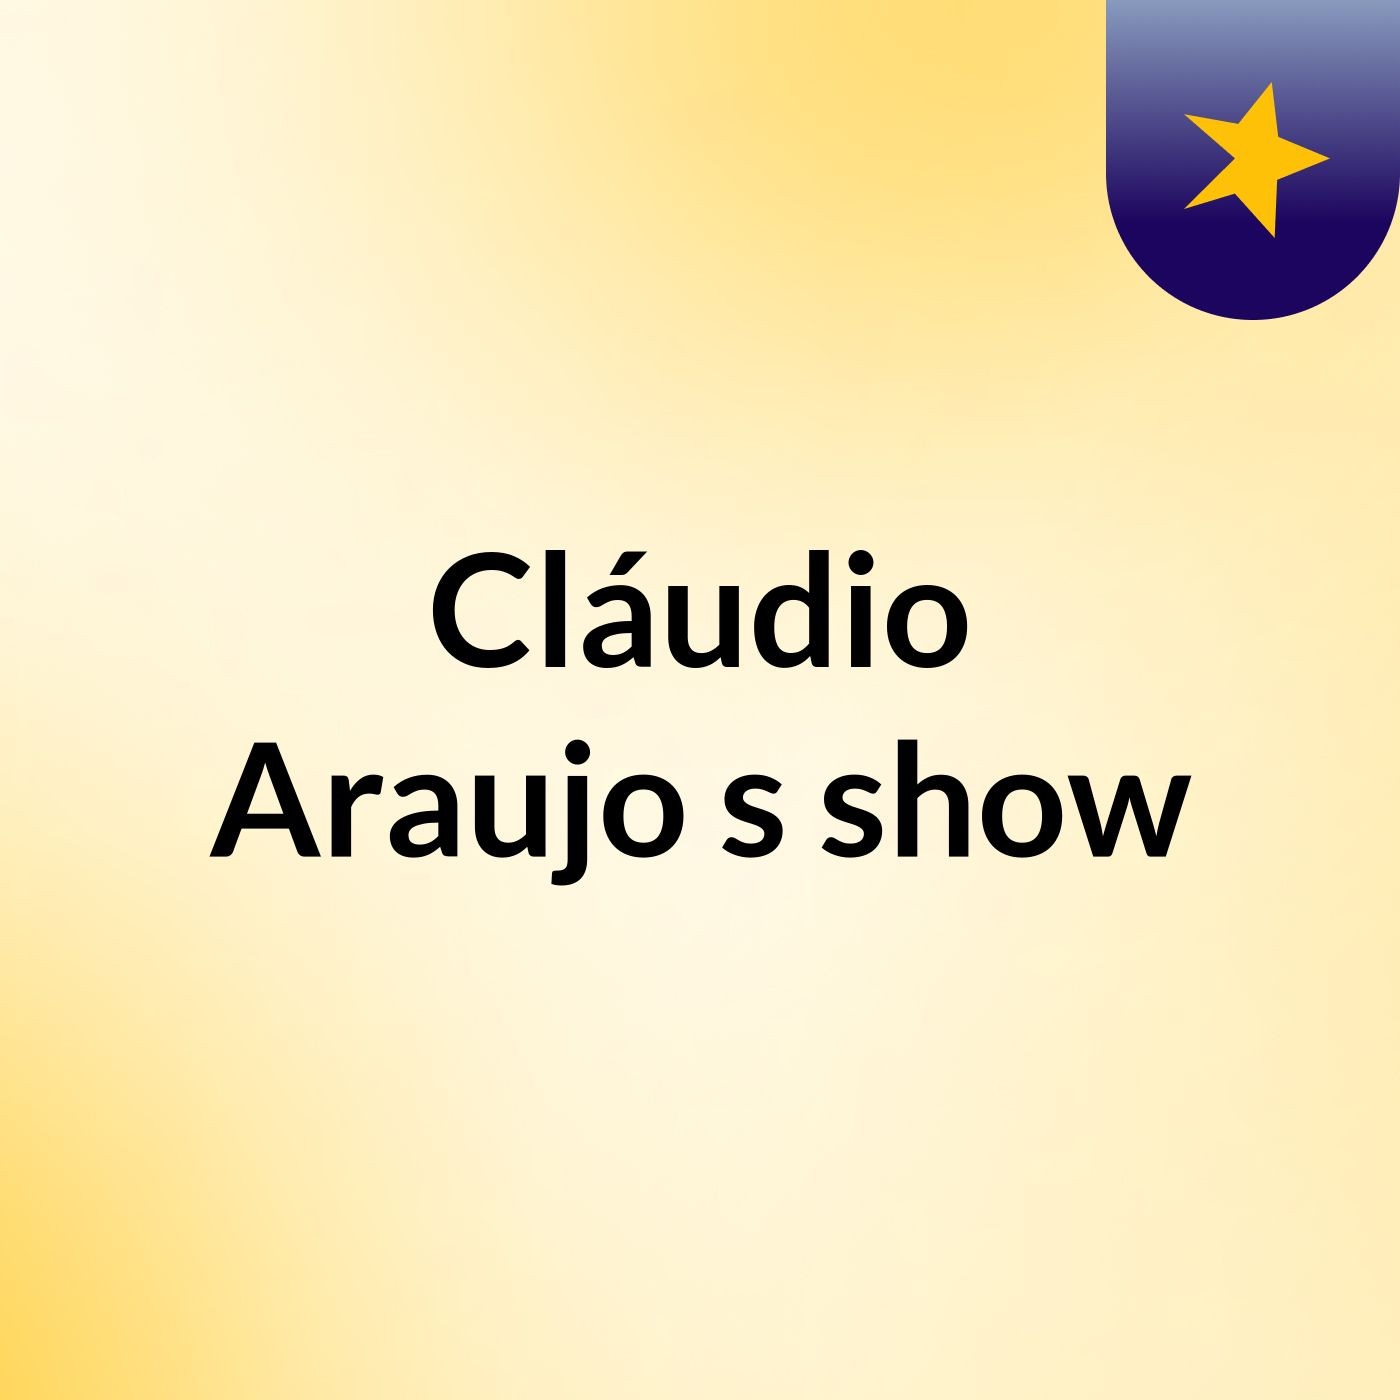 Cláudio Araujo's show